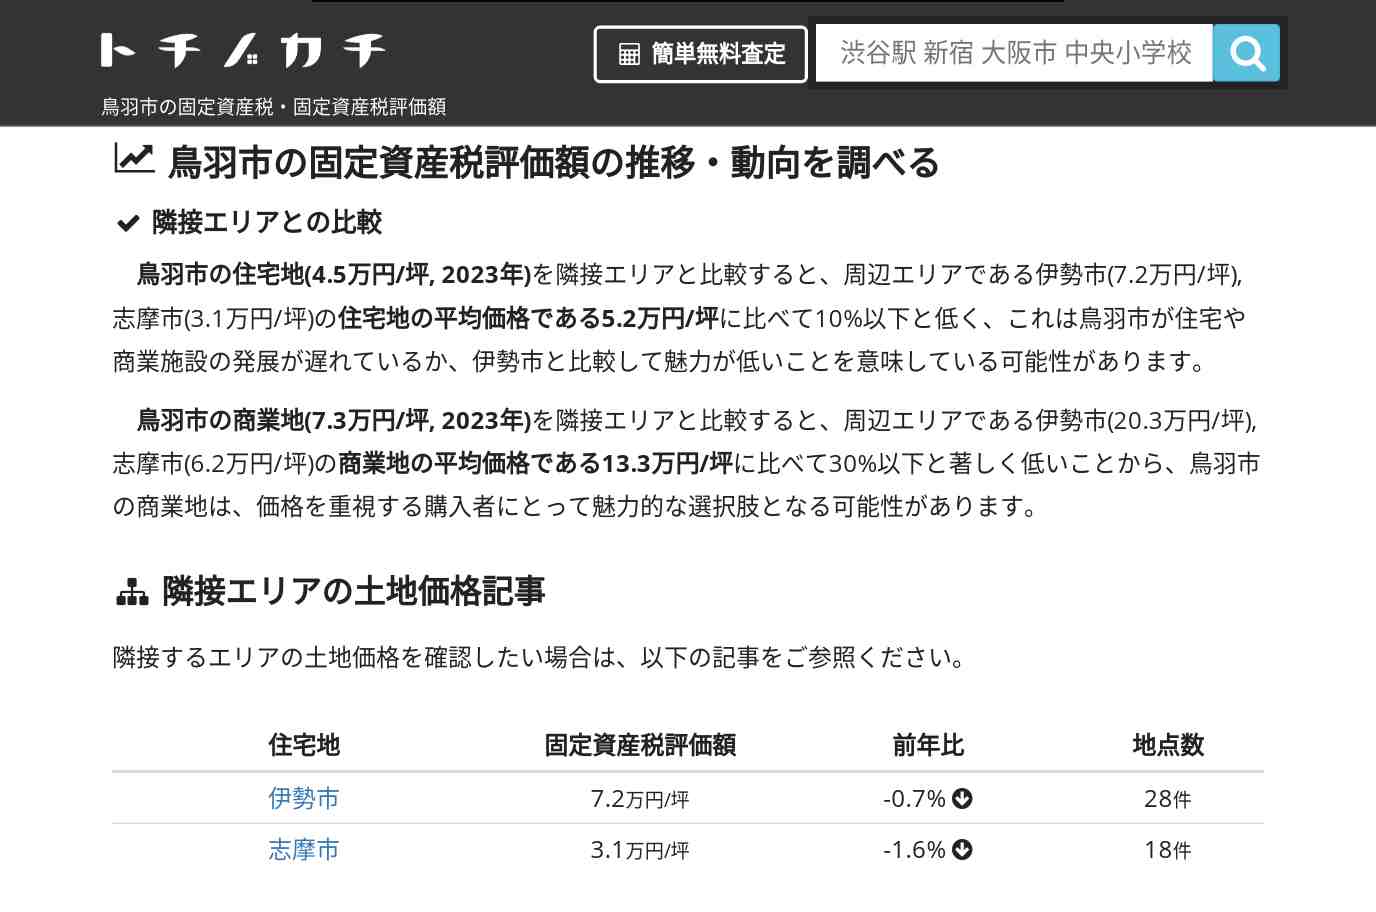 加茂小学校(三重県 鳥羽市)周辺の固定資産税・固定資産税評価額 | トチノカチ